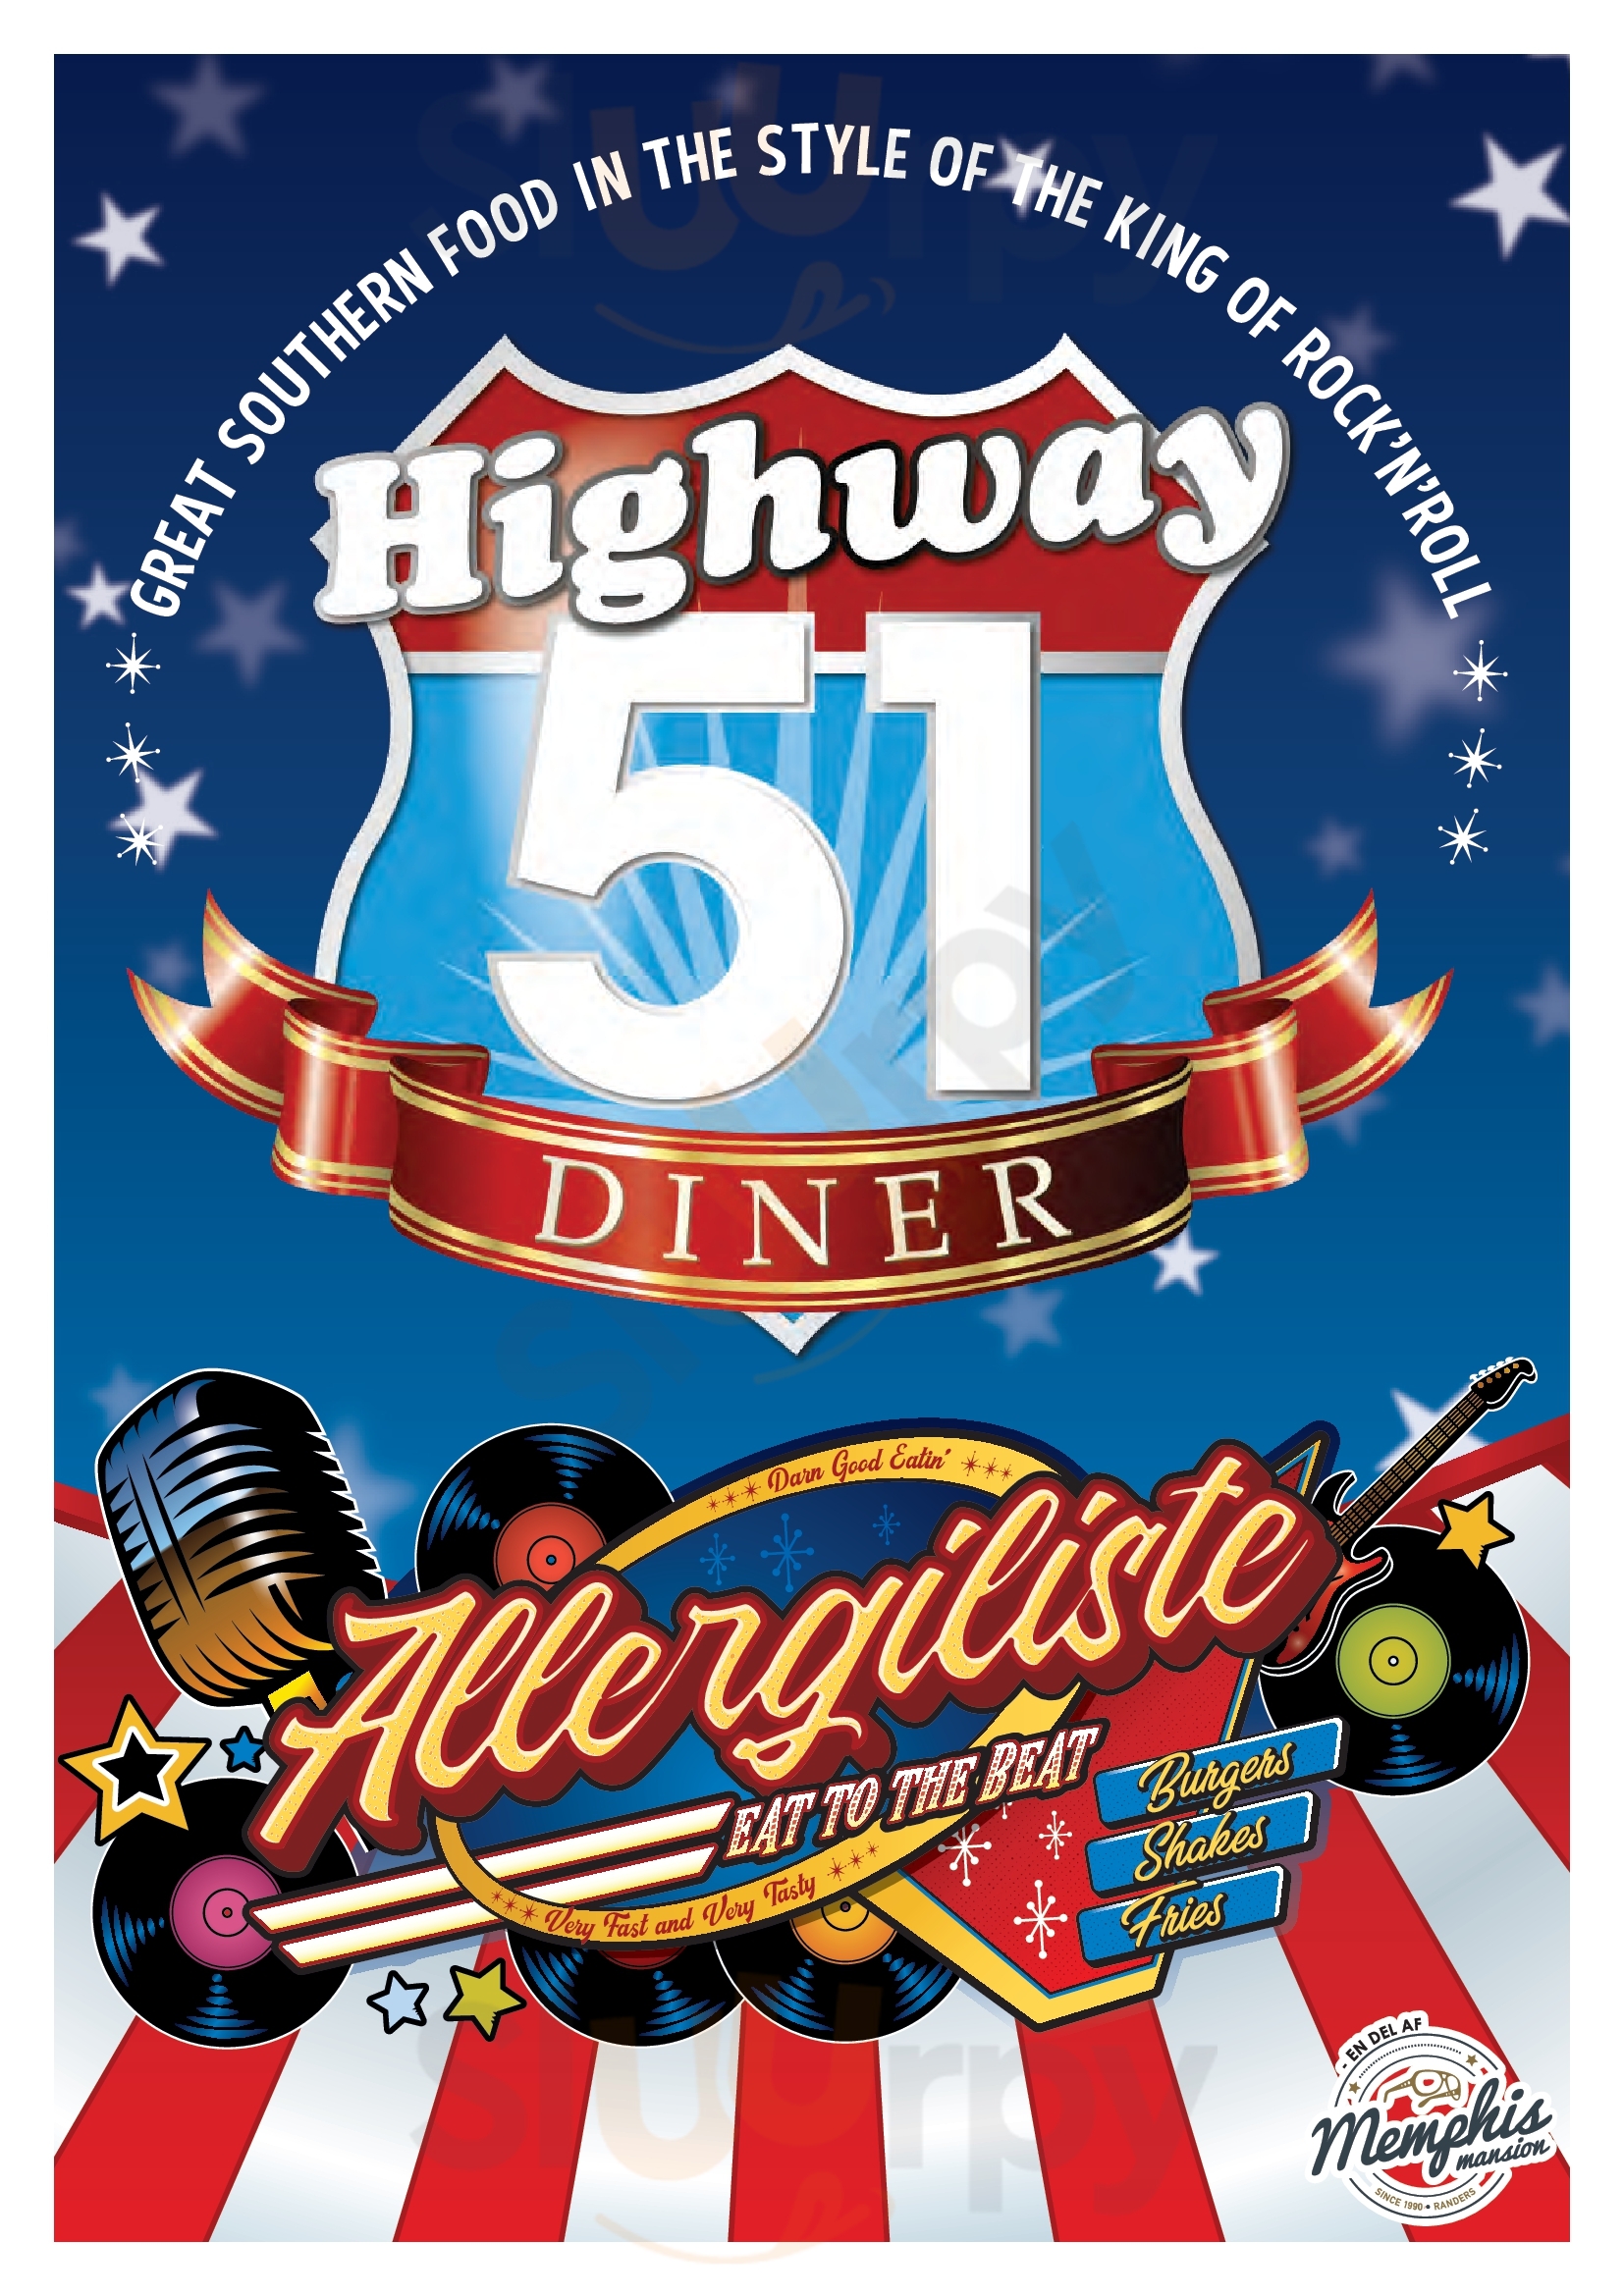 Highway 51 Diner Vejle Menu - 1